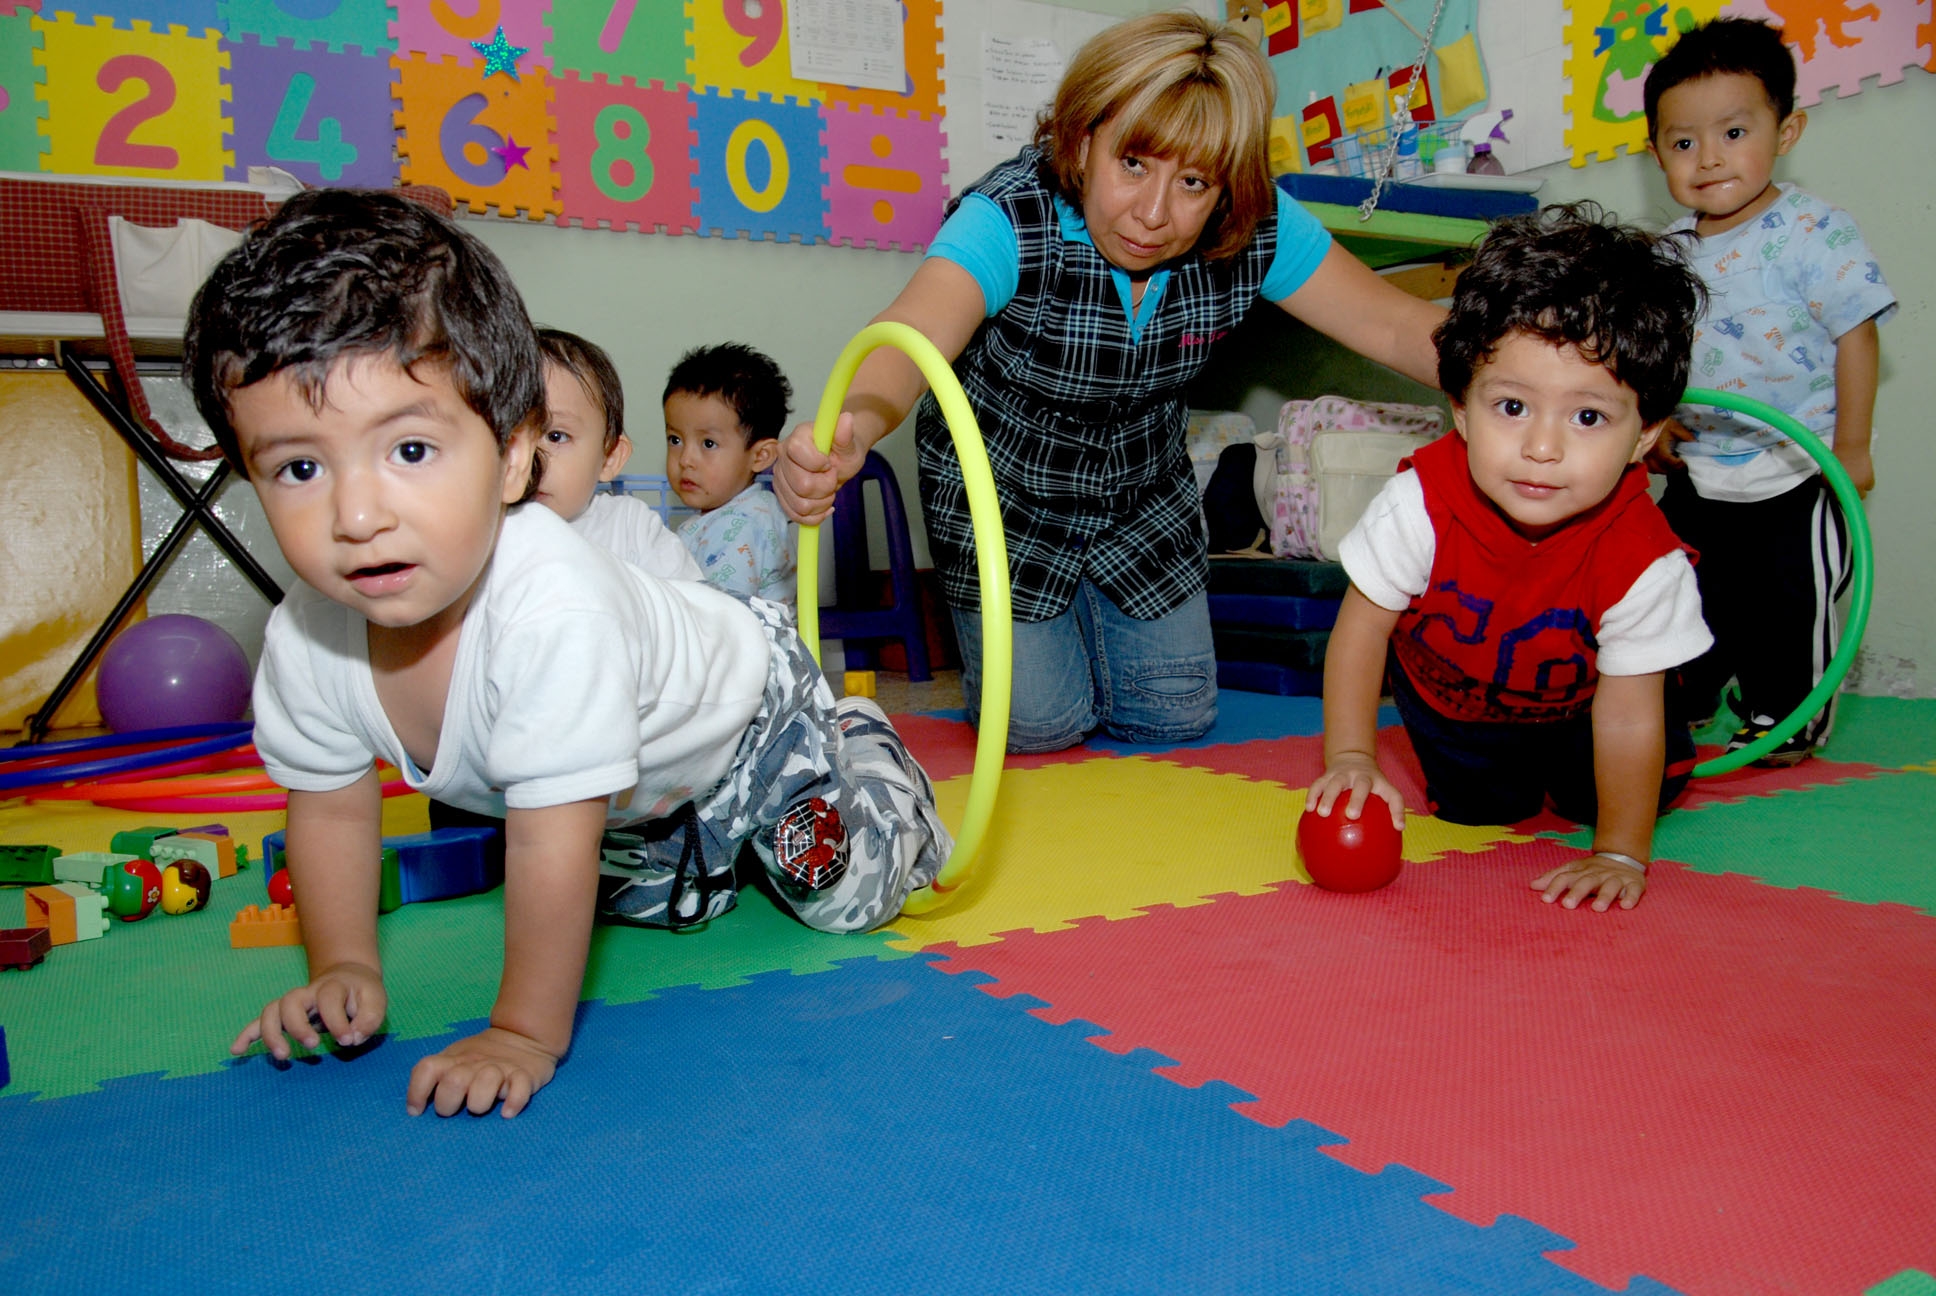 Ministro propuesto por López Obrador decidirá sobre estancias infantiles